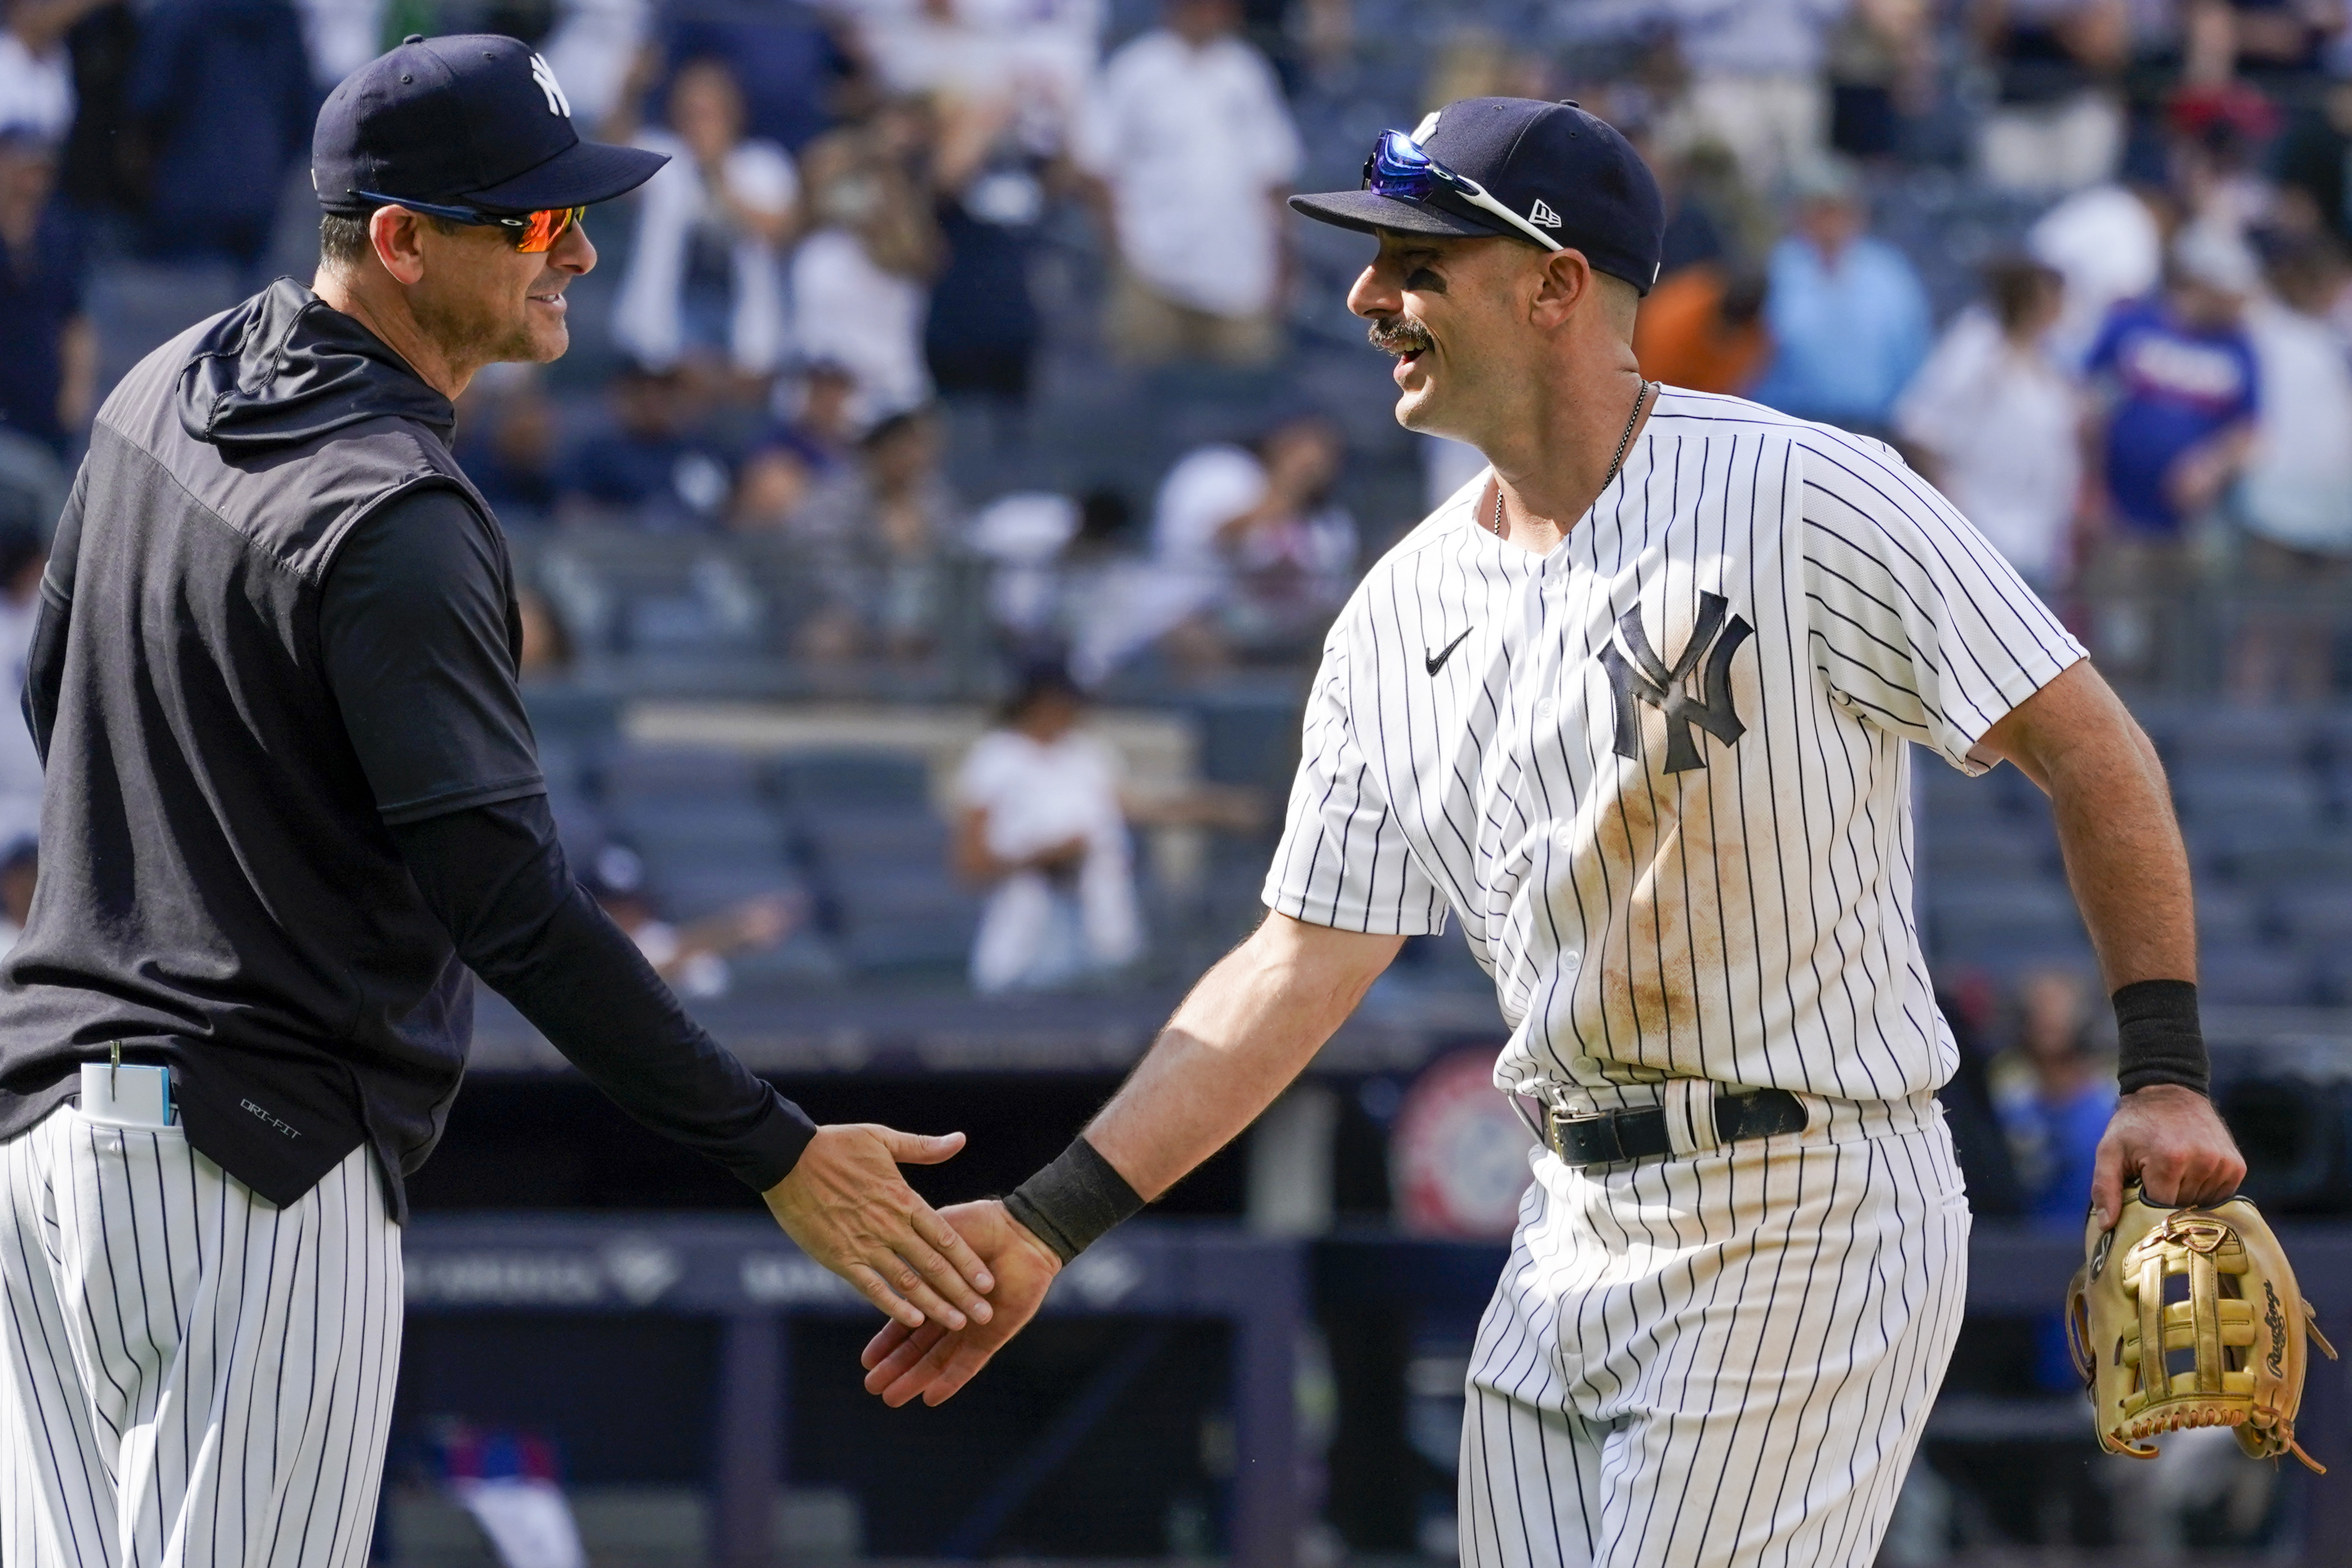 Yankees' Matt Carpenter is hitting home runs, reviving his career